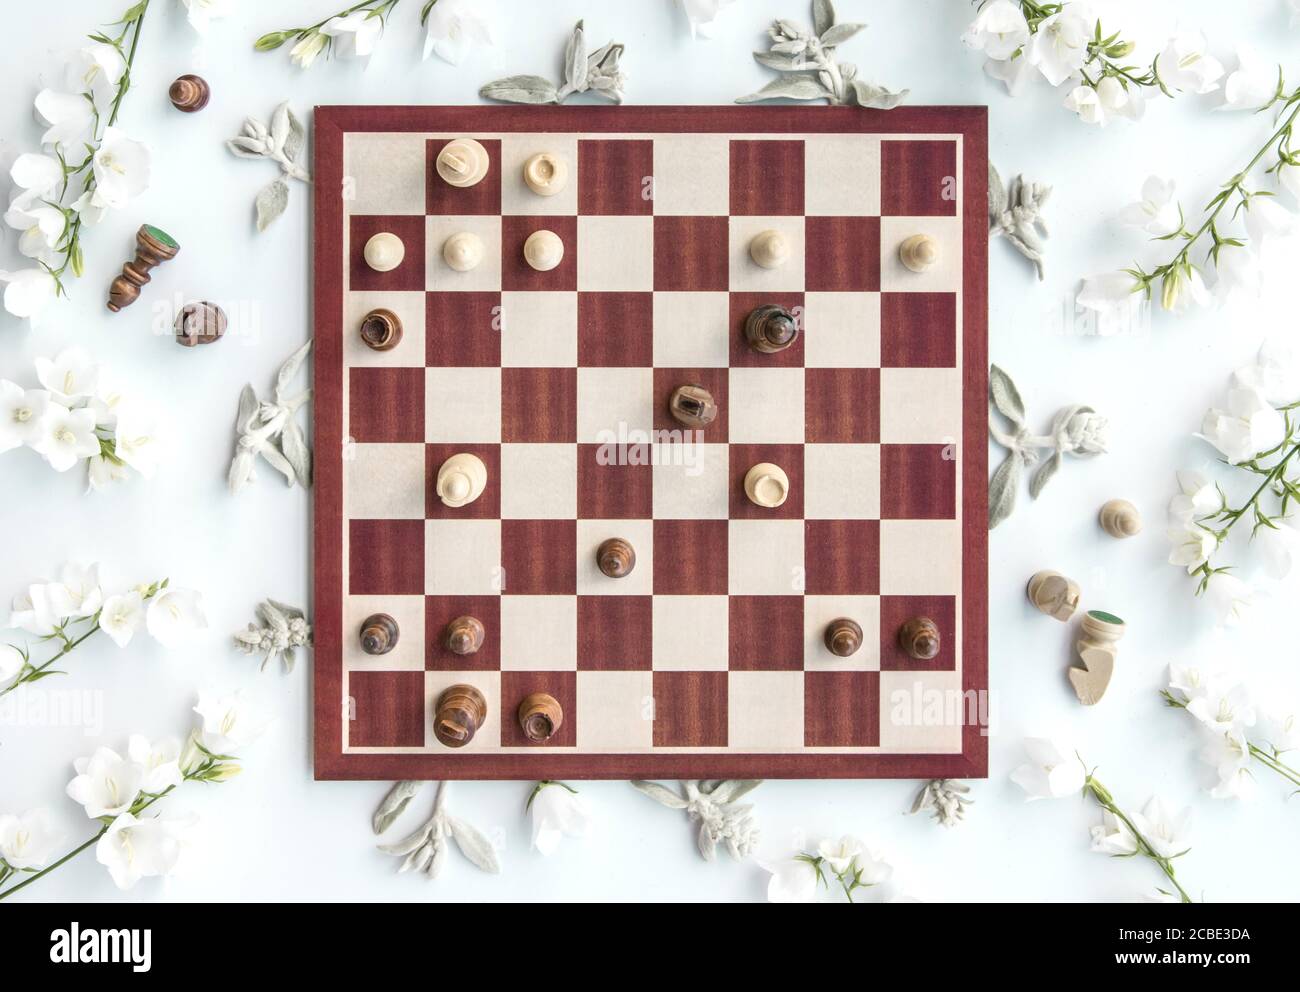 Styled hölzerne Schachspiel-Szene mit Blumen, Schach-Puzzle, opfern  Königin, flach legen, Blick von oben, kreative Styling Stockfotografie -  Alamy